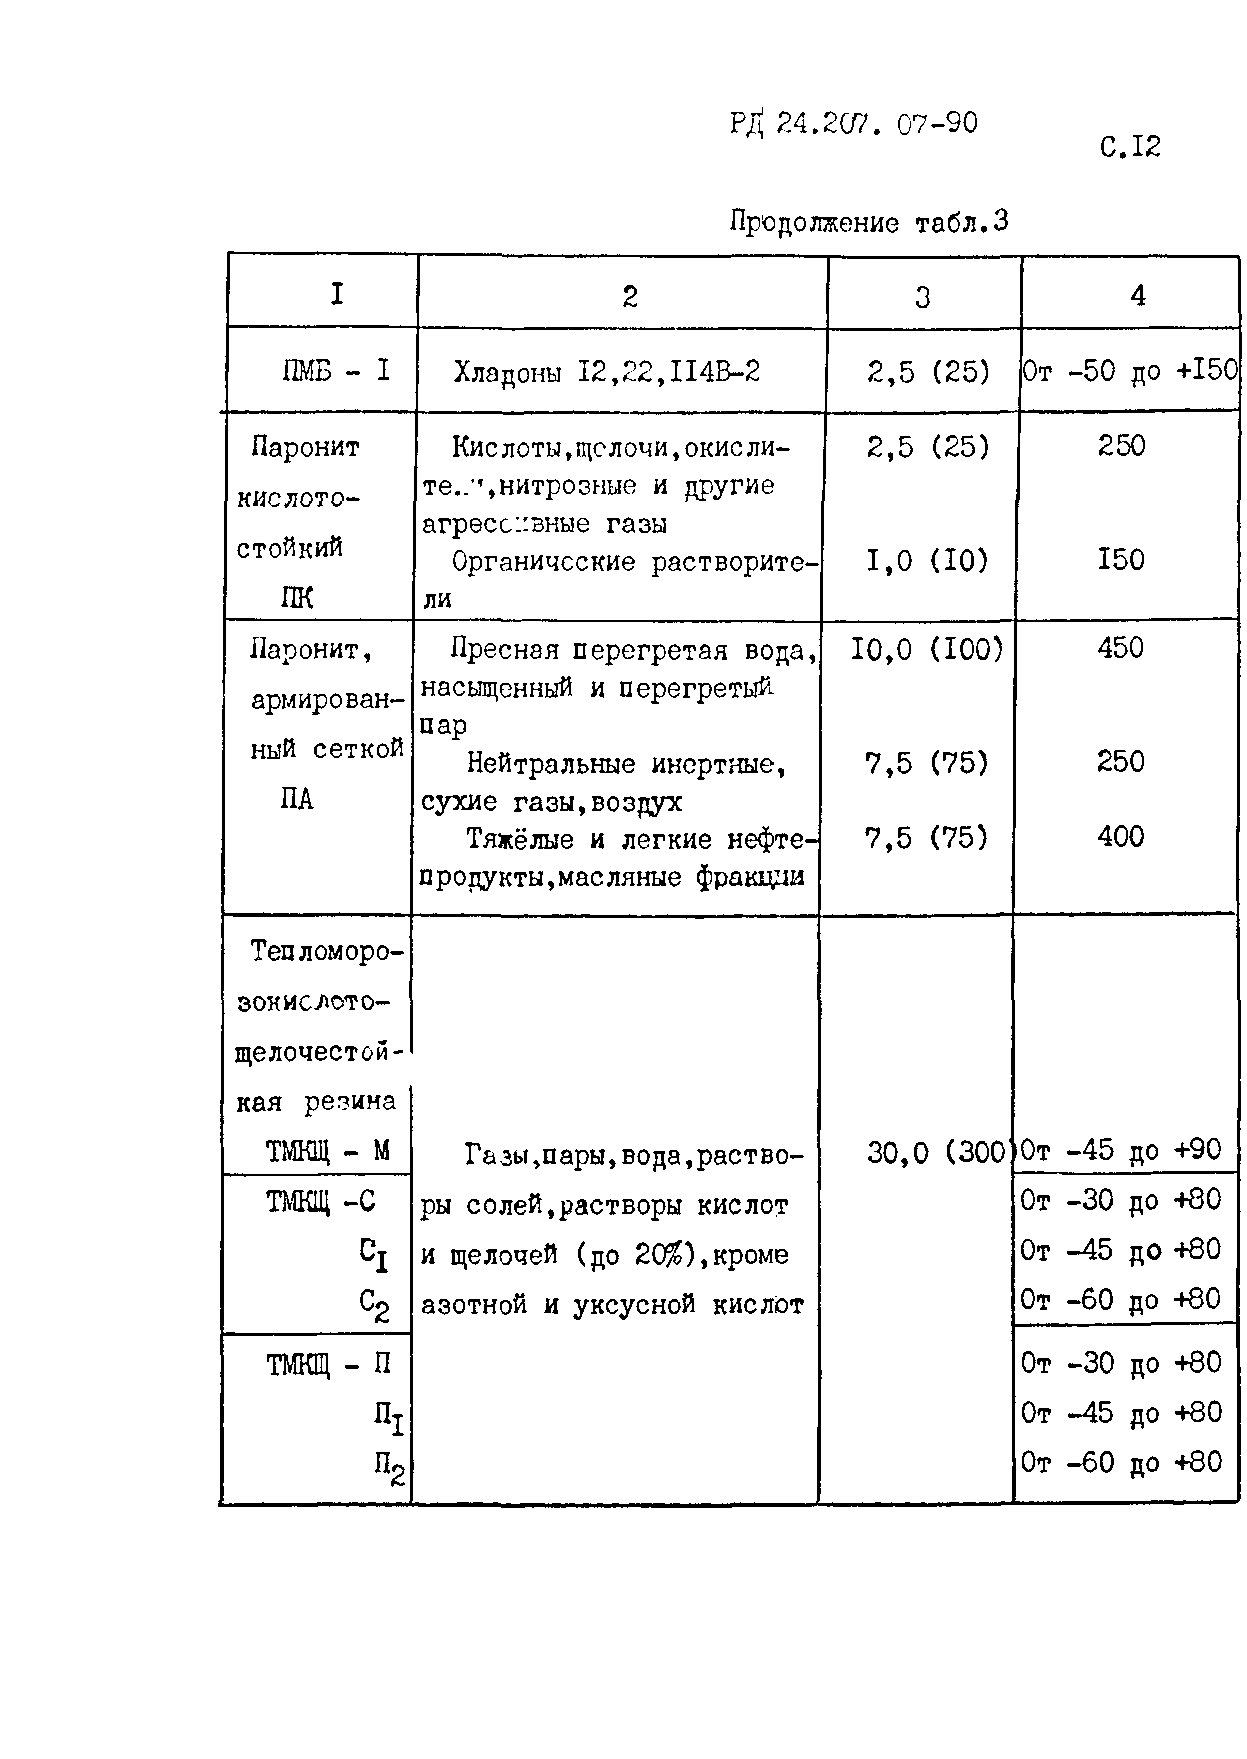 РД 24.207.07-90